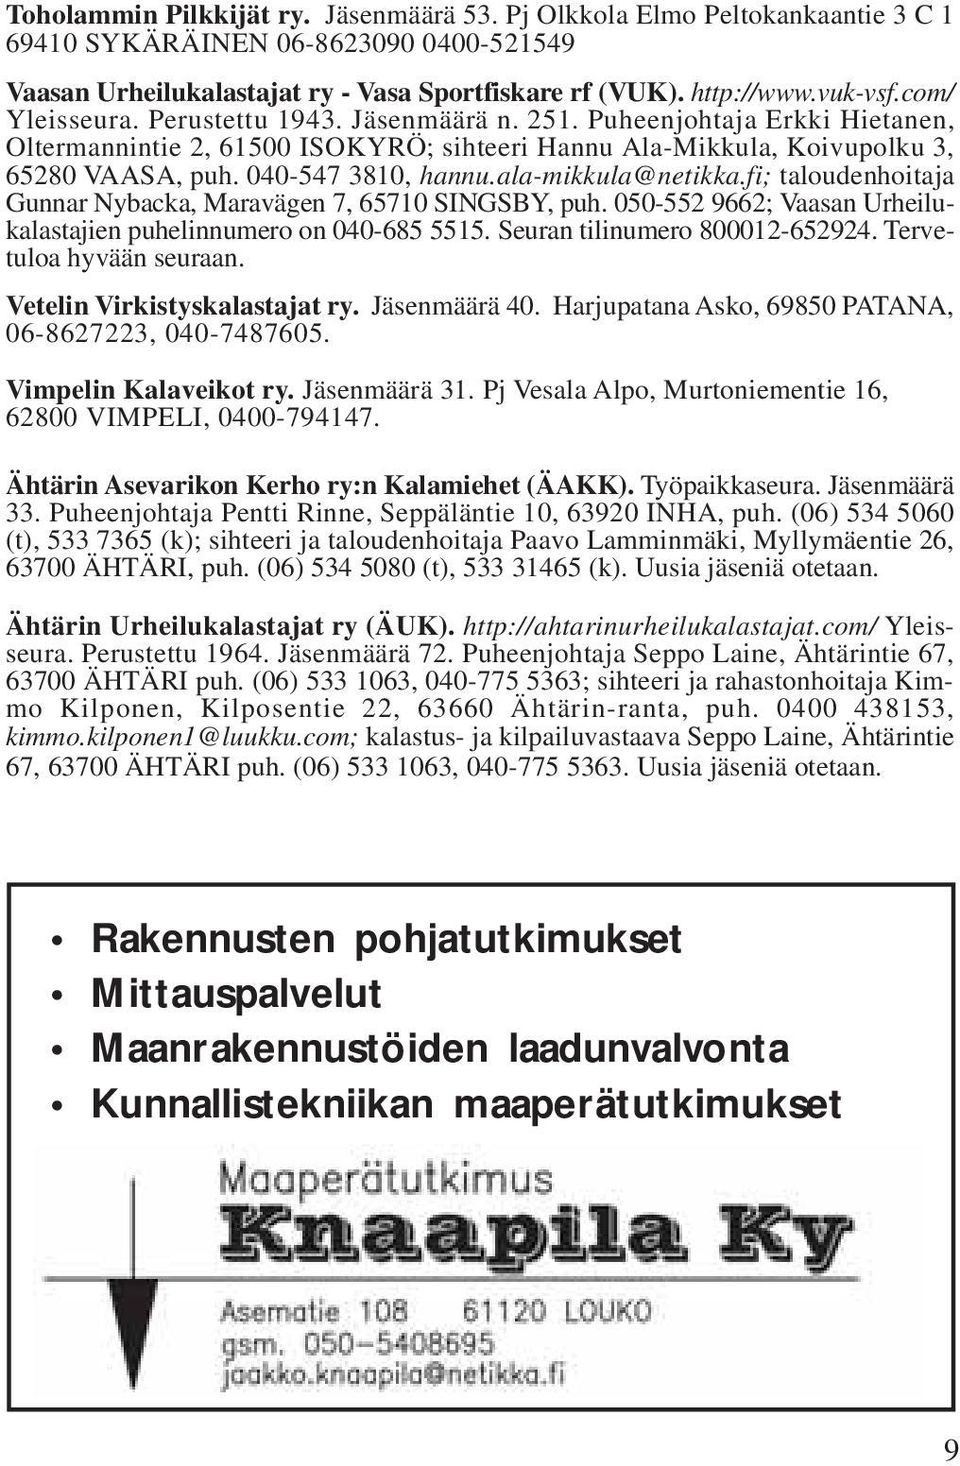 ala-mikkula@netikka.fi; taloudenhoitaja Gunnar Nybacka, Maravägen 7, 65710 SINGSBY, puh. 050-552 9662; Vaasan Urheilukalastajien puhelinnumero on 040-685 5515. Seuran tilinumero 800012-652924.